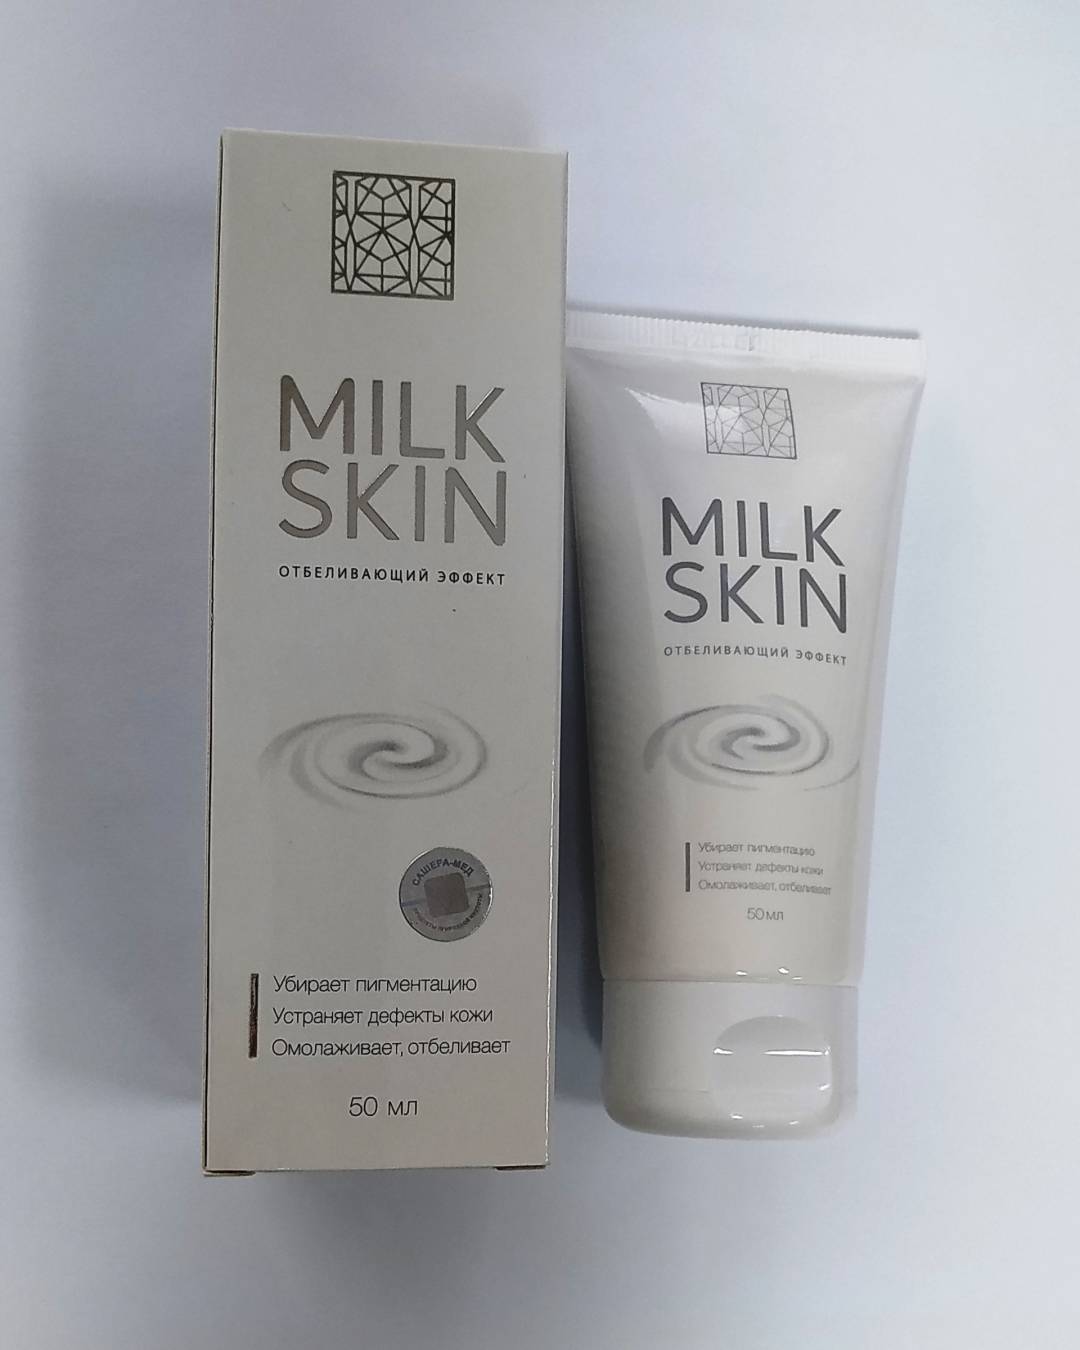 Купить онлайн Крем отбеливающий Milk Skin, 50 мл в интернет-магазине Беришка с доставкой по Хабаровску и по России недорого.